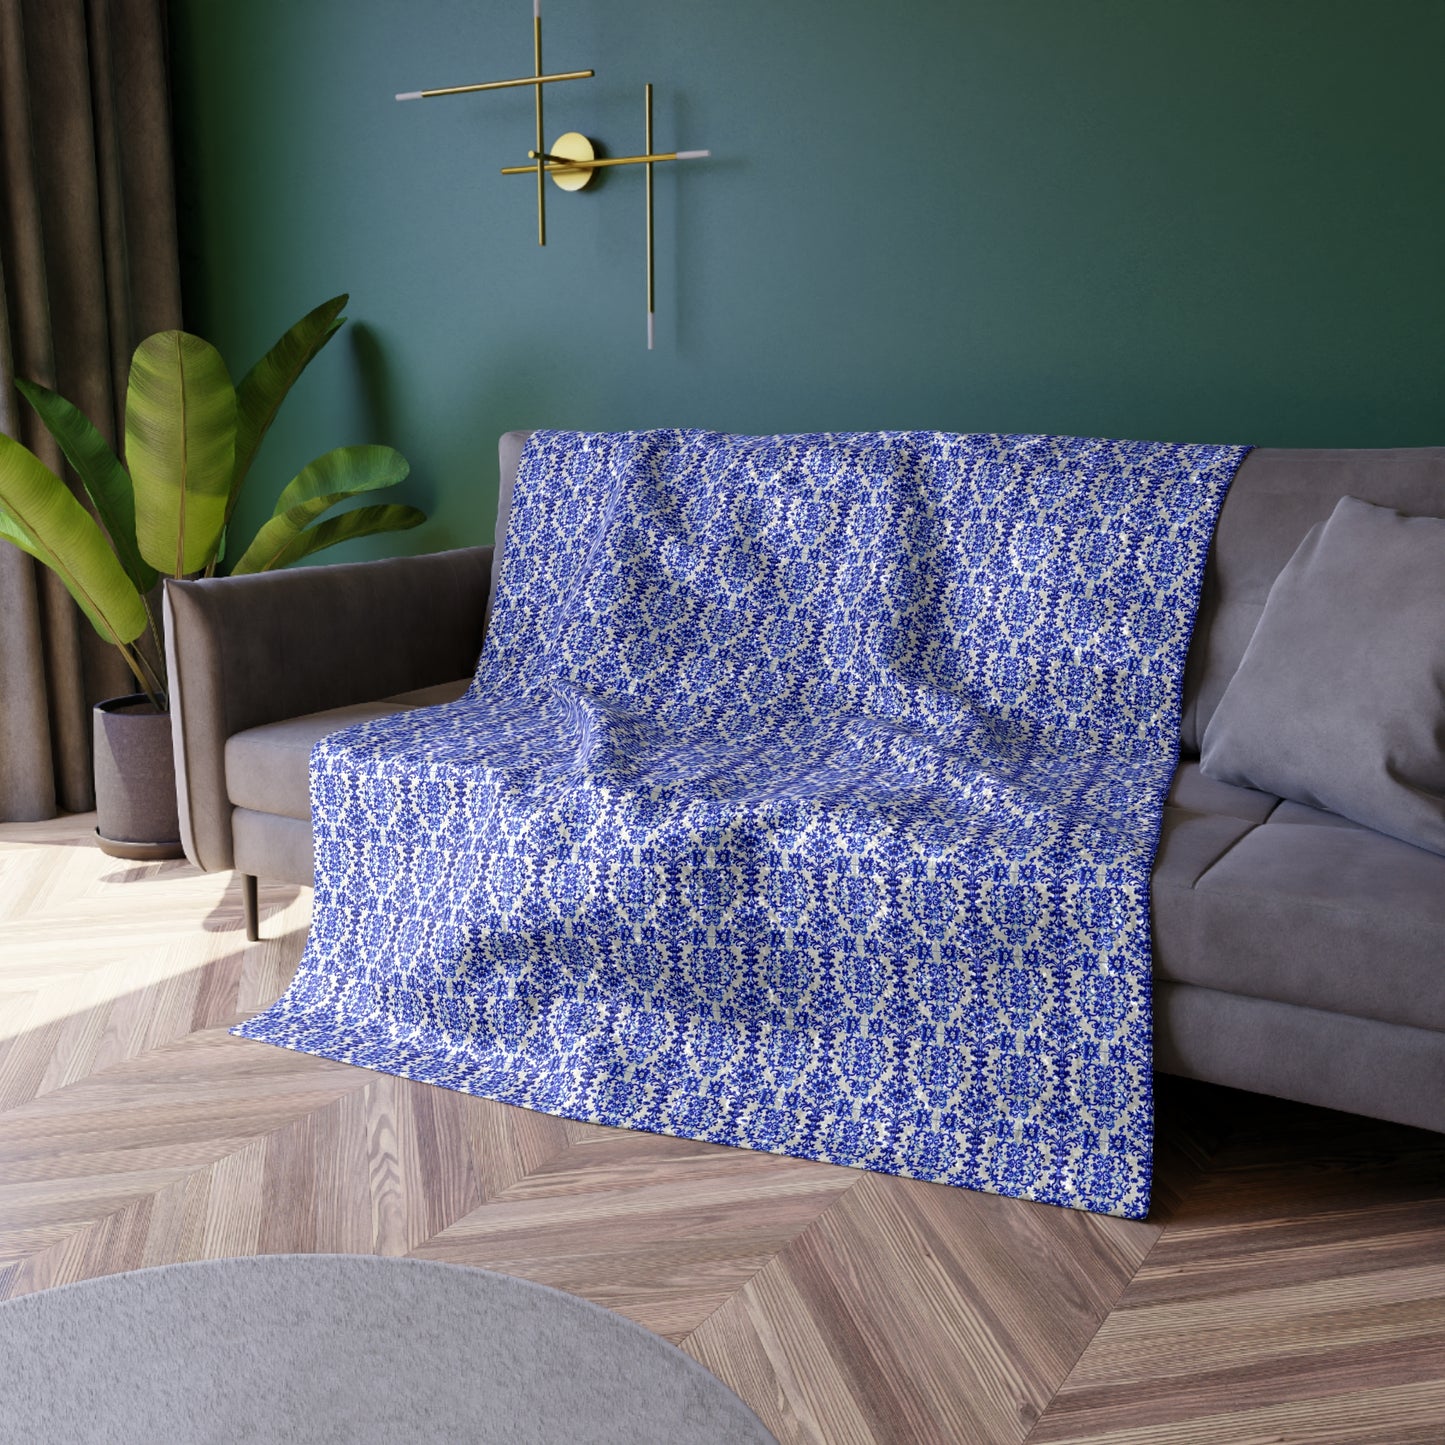 Portuguese Blue and White Tile Pattern Designer Global Collection Warm Cozy Lounge Shimmer Crushed Velvet Blanket